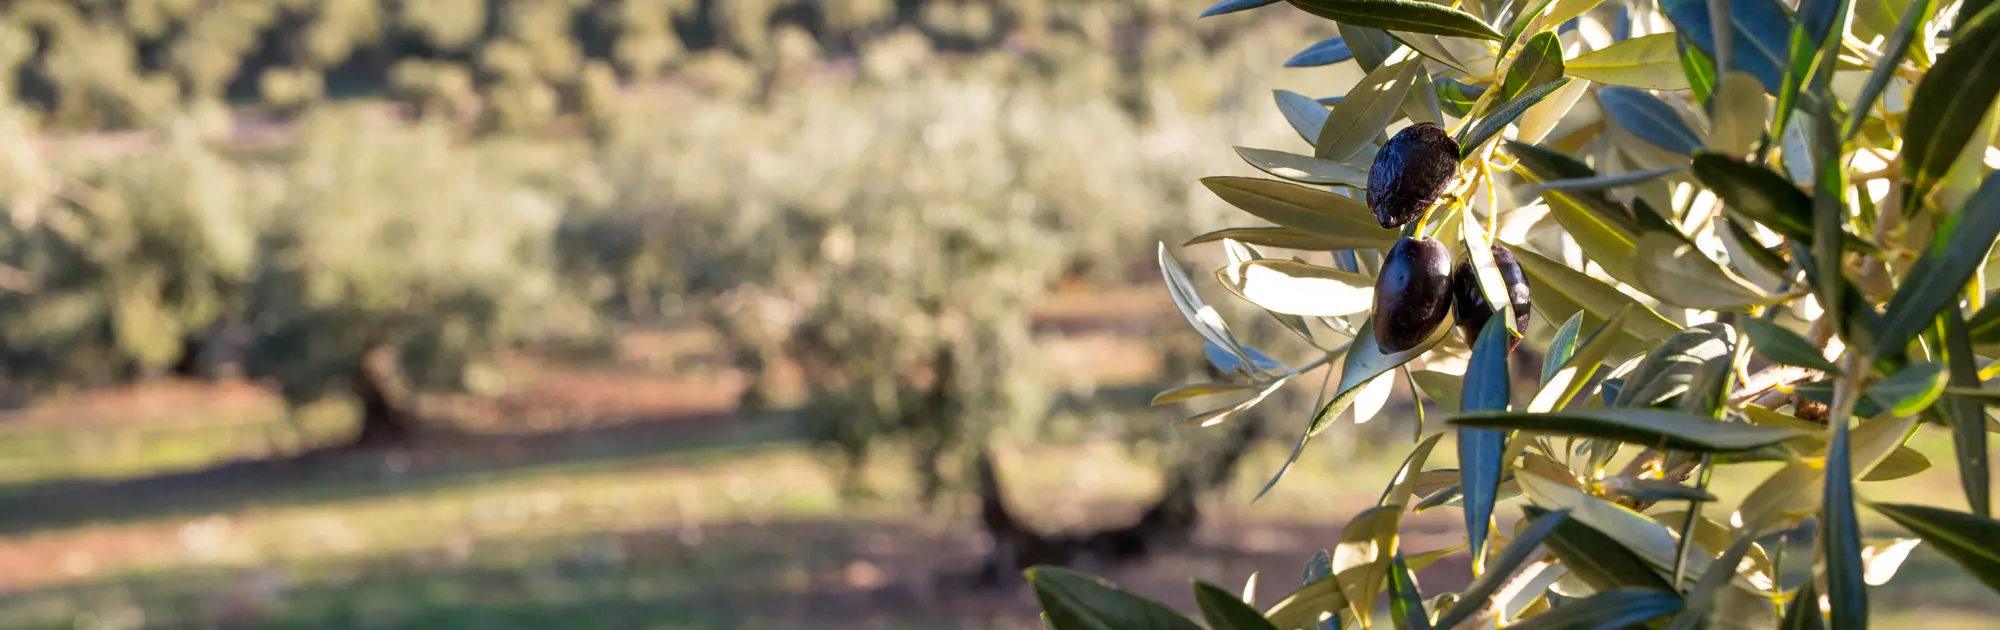 Aceite de oliva picual, una de las variedades más exquisitas